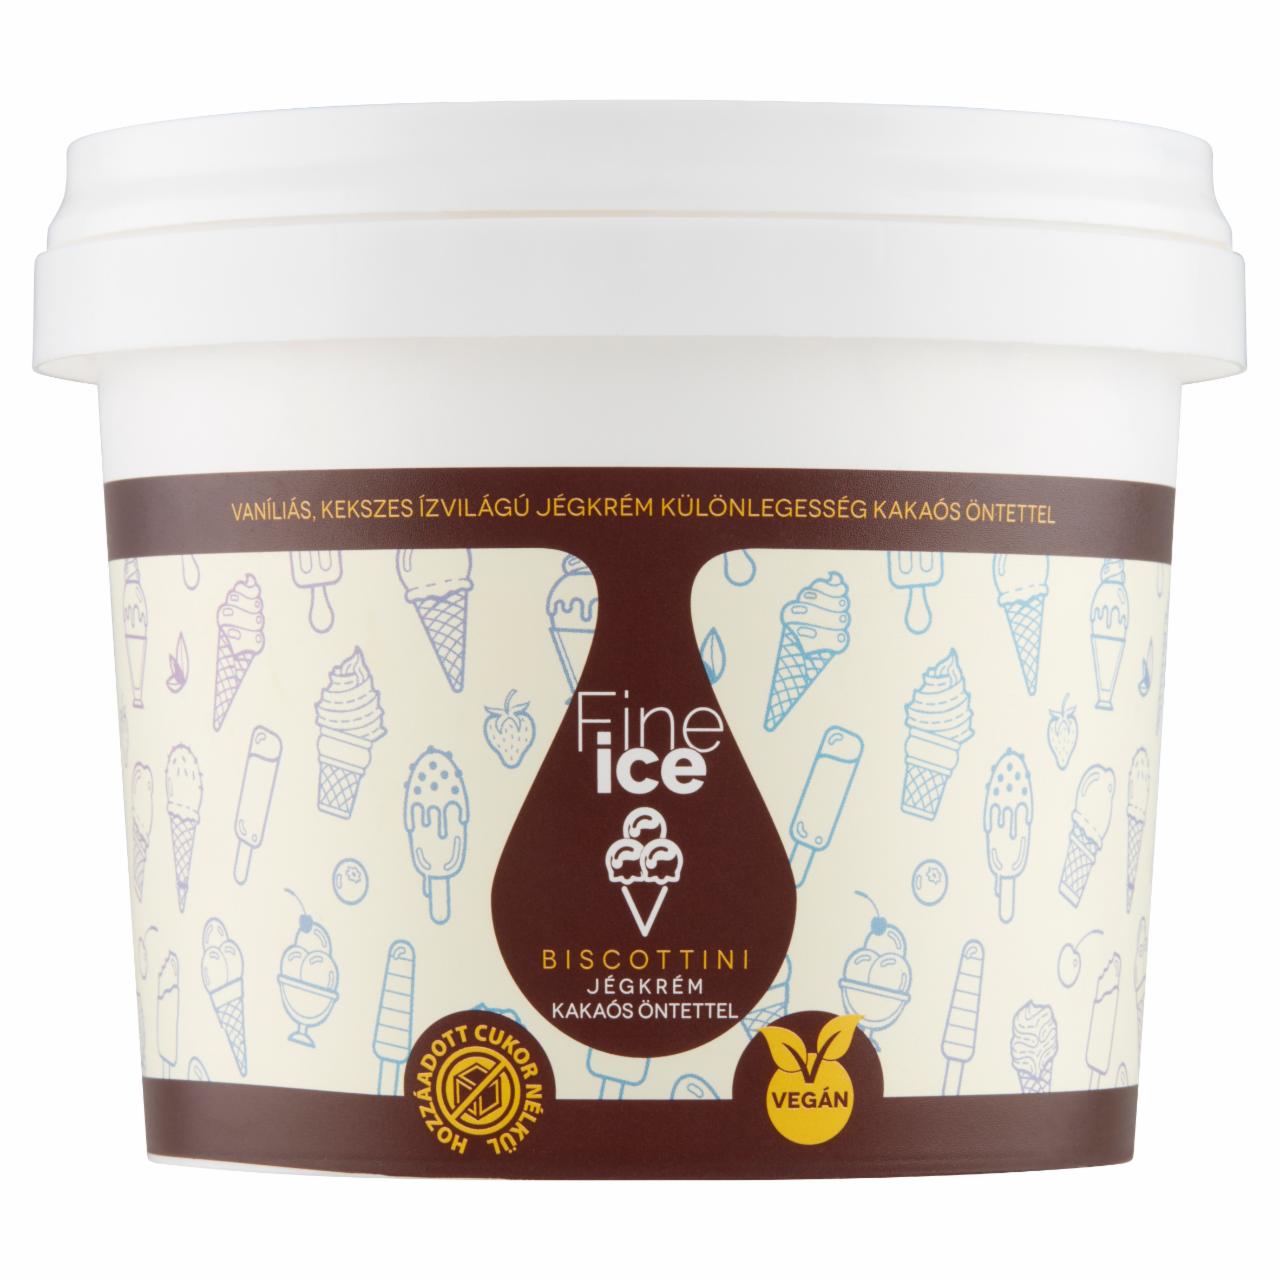 Képek - Fine Ice Biscottini vaníliás, kekszes ízvilágú jégkrém különlegesség kakaós öntettel 500 ml